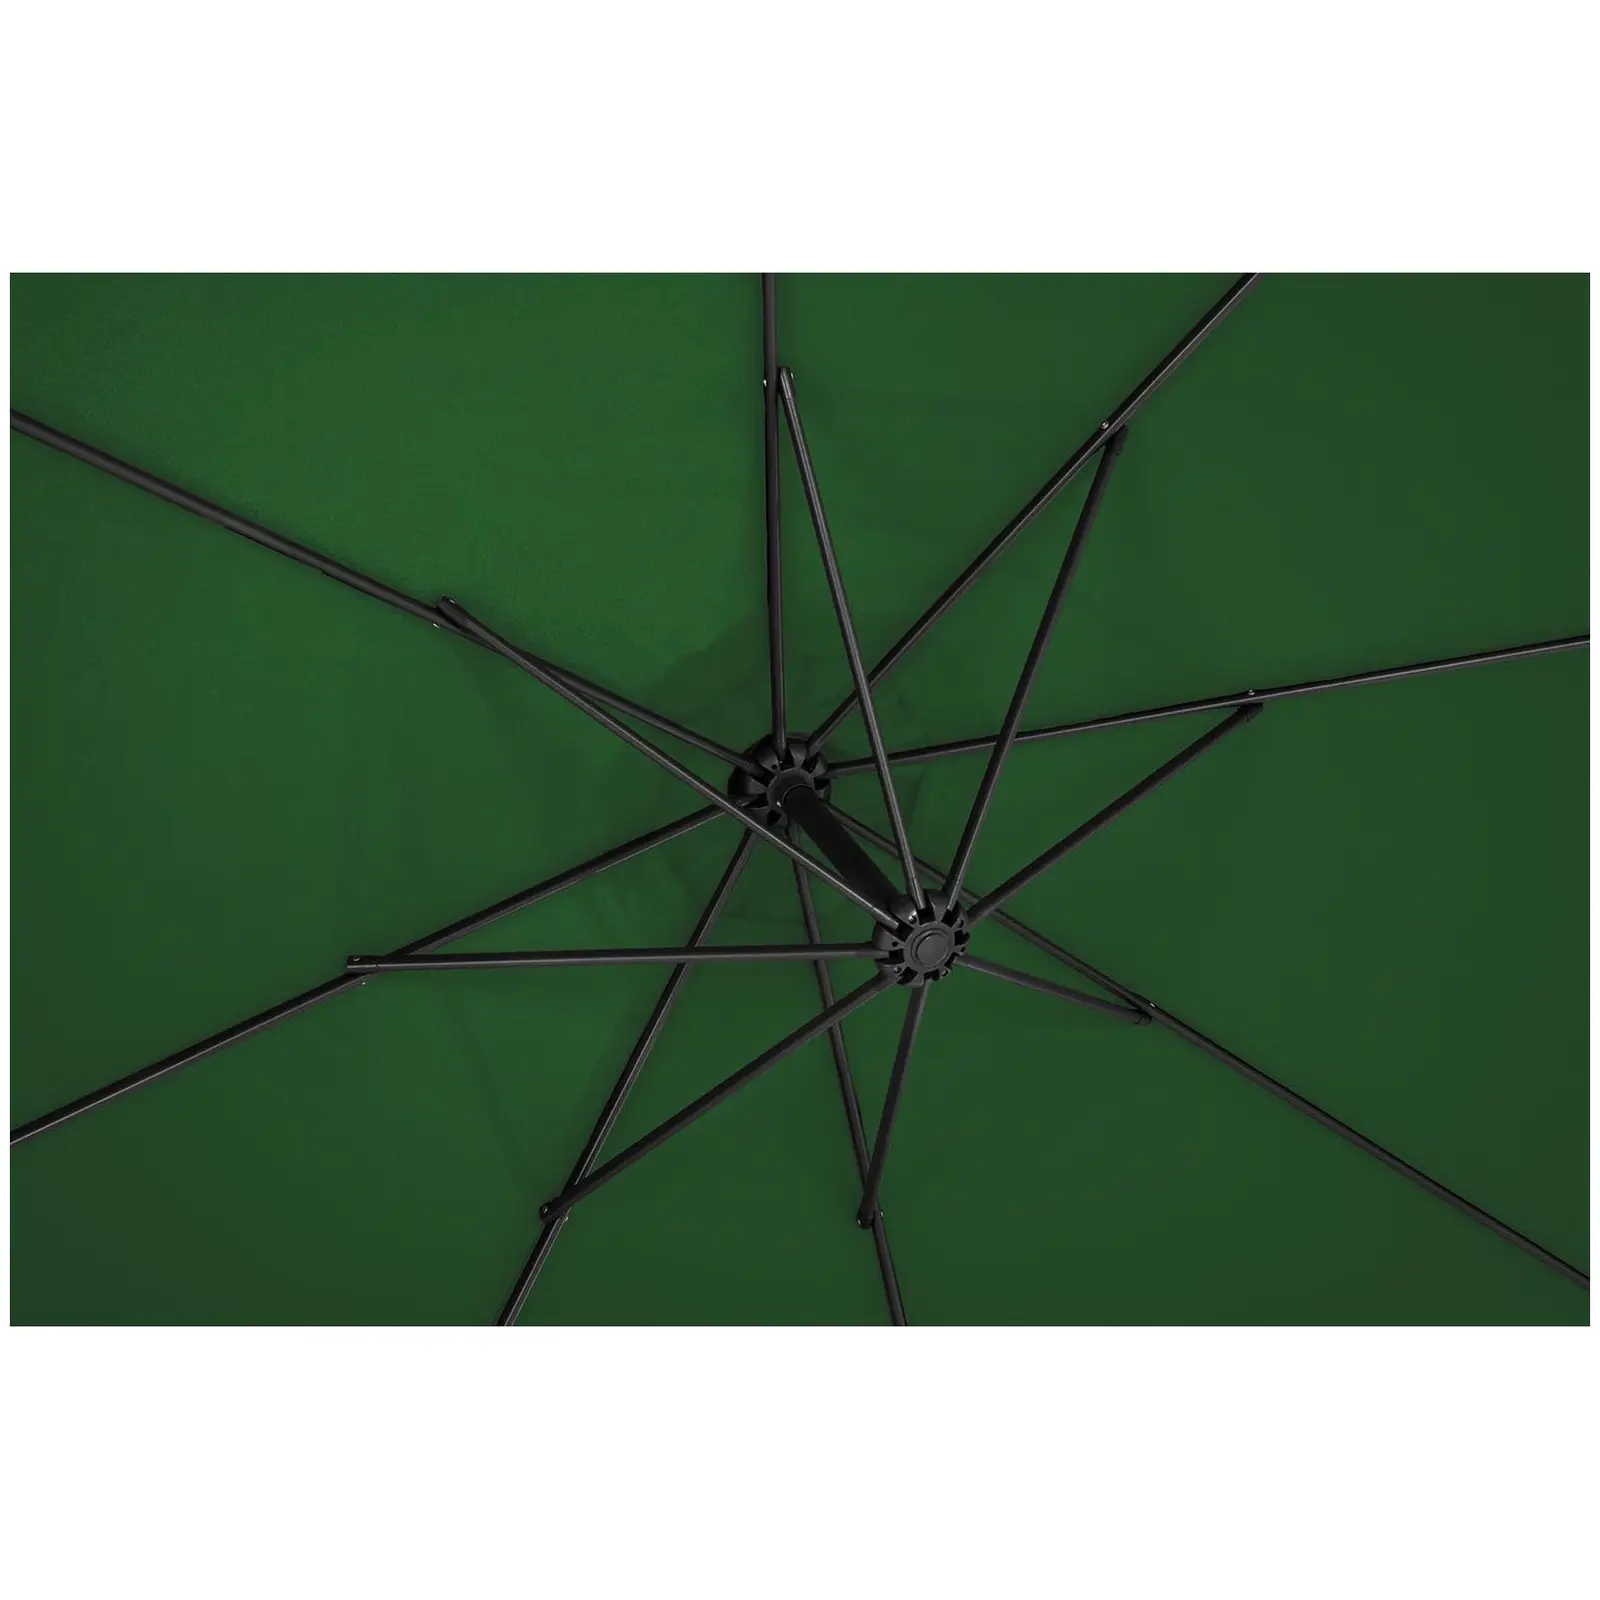 Andrahandssortering Hängparasoll - grönt - runt - Ø 300 cm - kan lutas